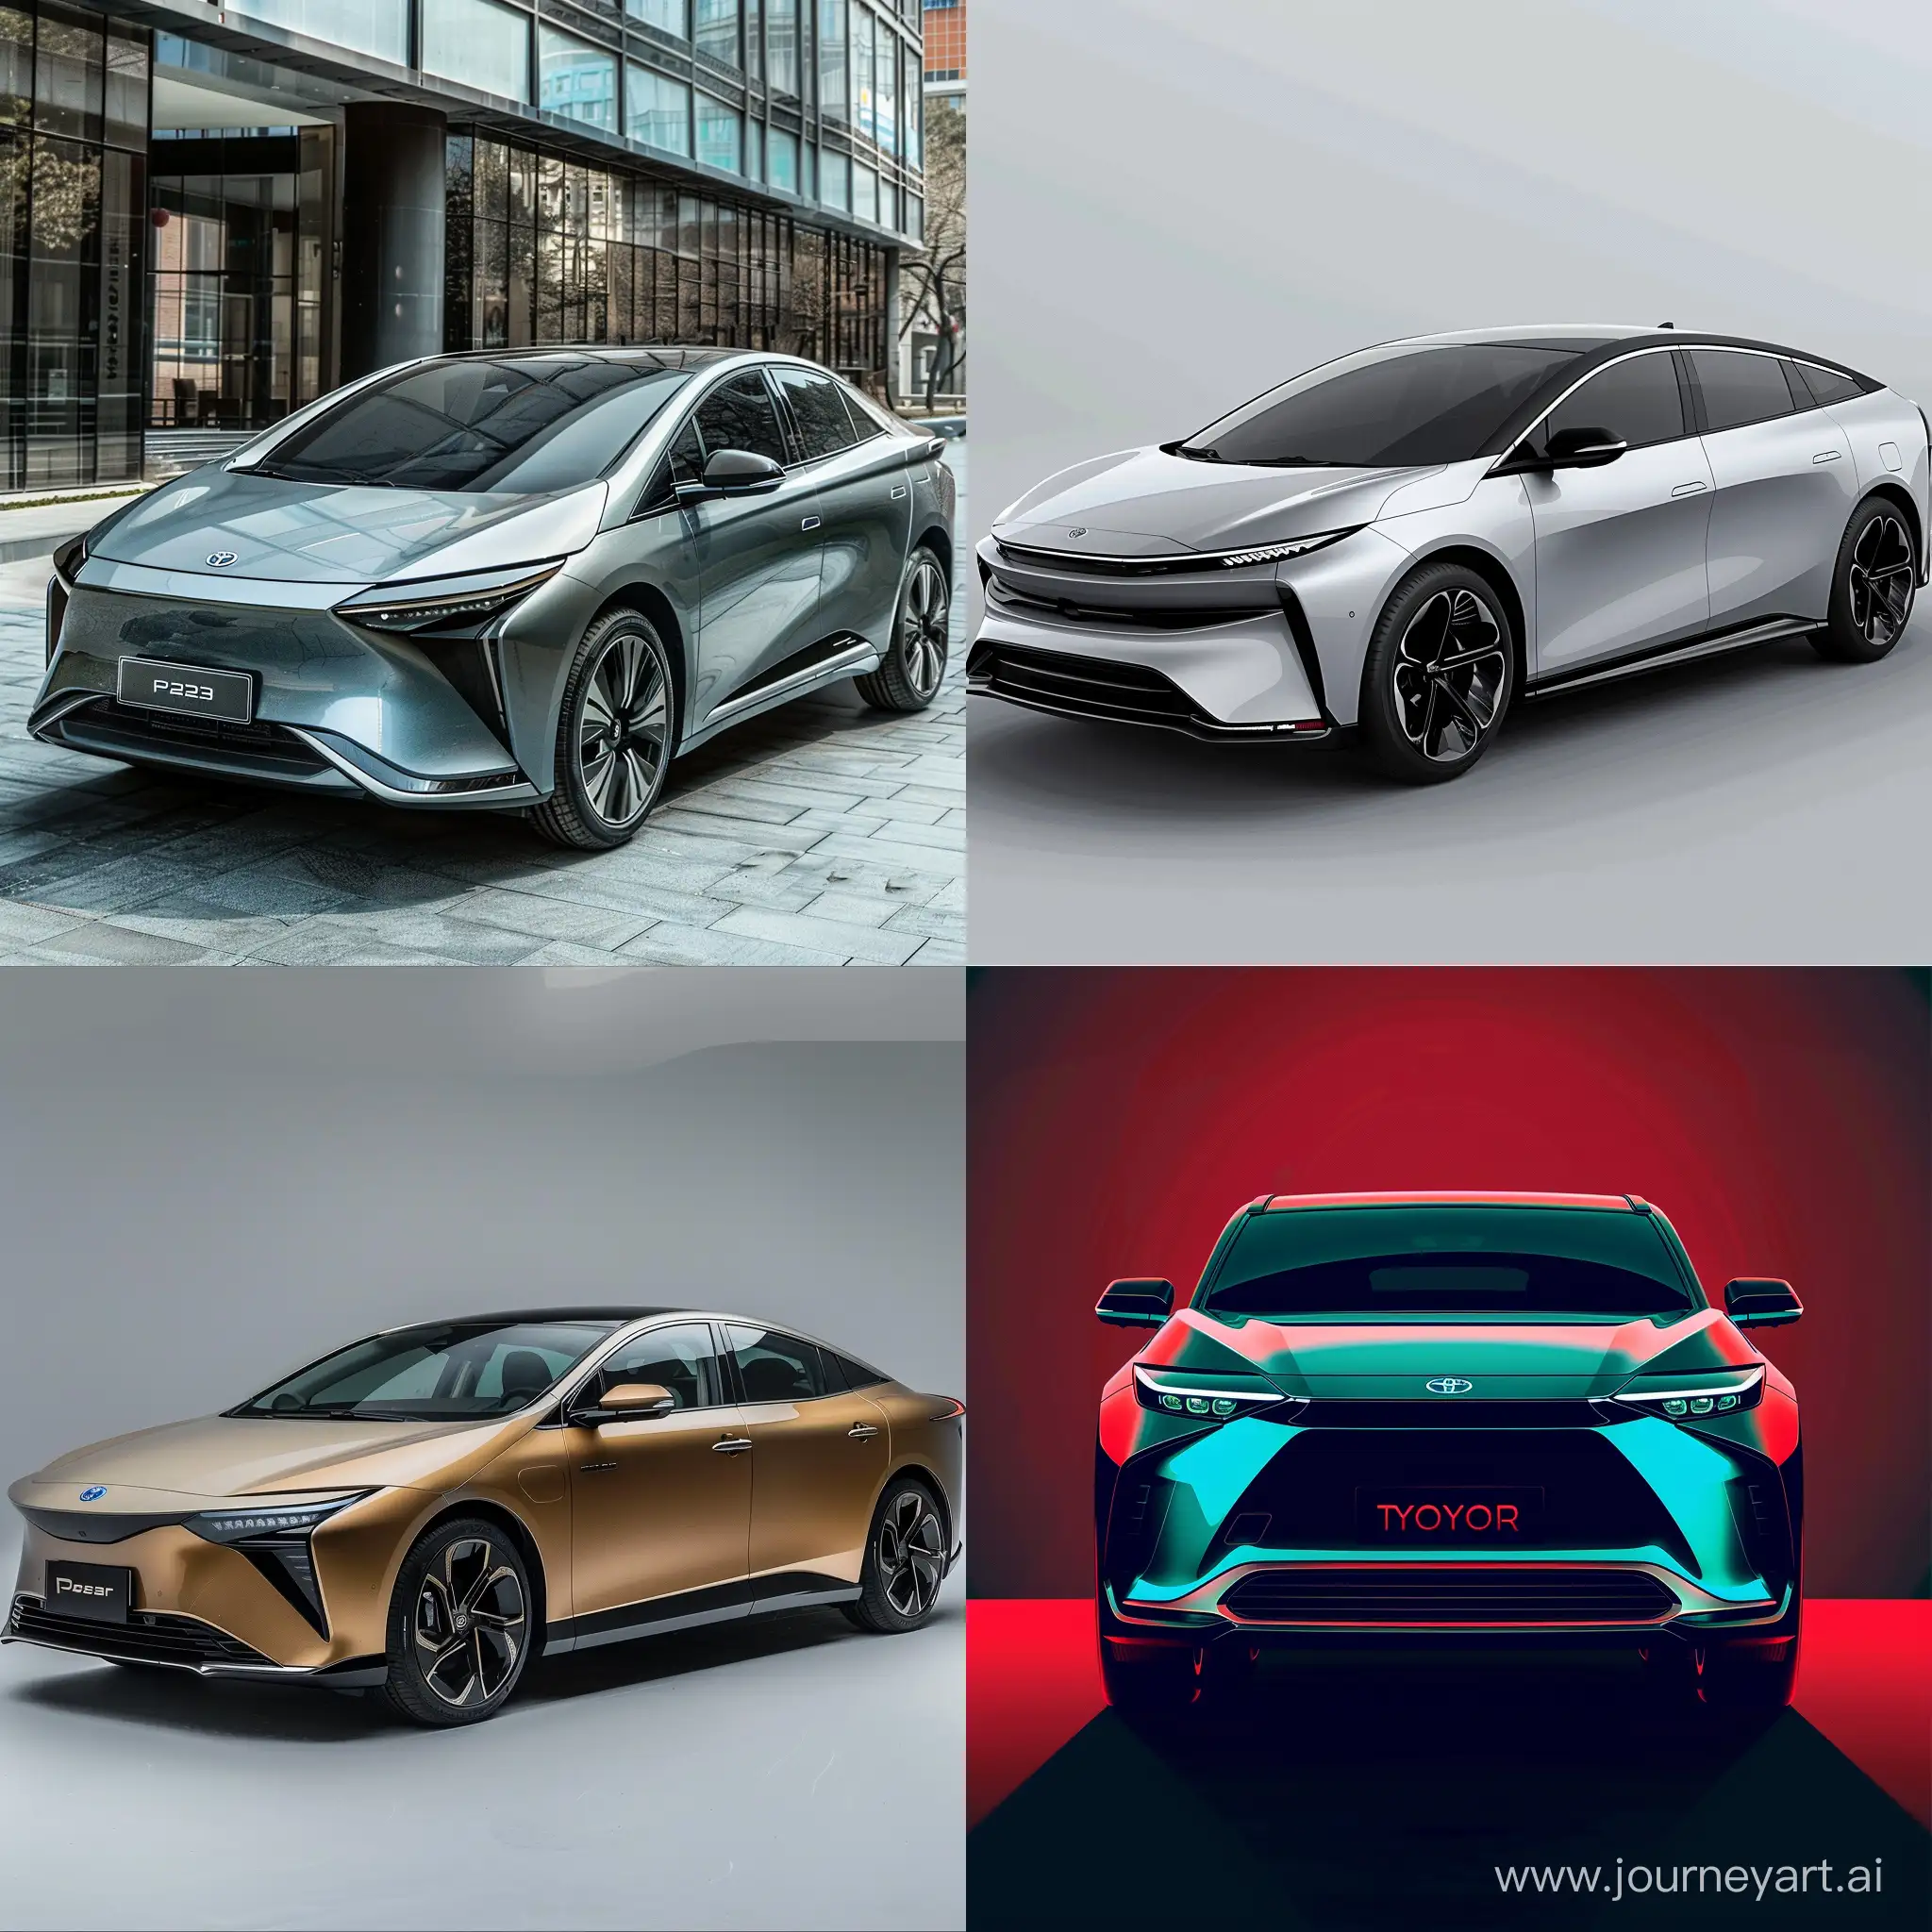 Дизайн нового автомобиля с современным аэродинамическим дизайном (провести аналогию Азией), прямой конкурент для Toyota Prius 2023